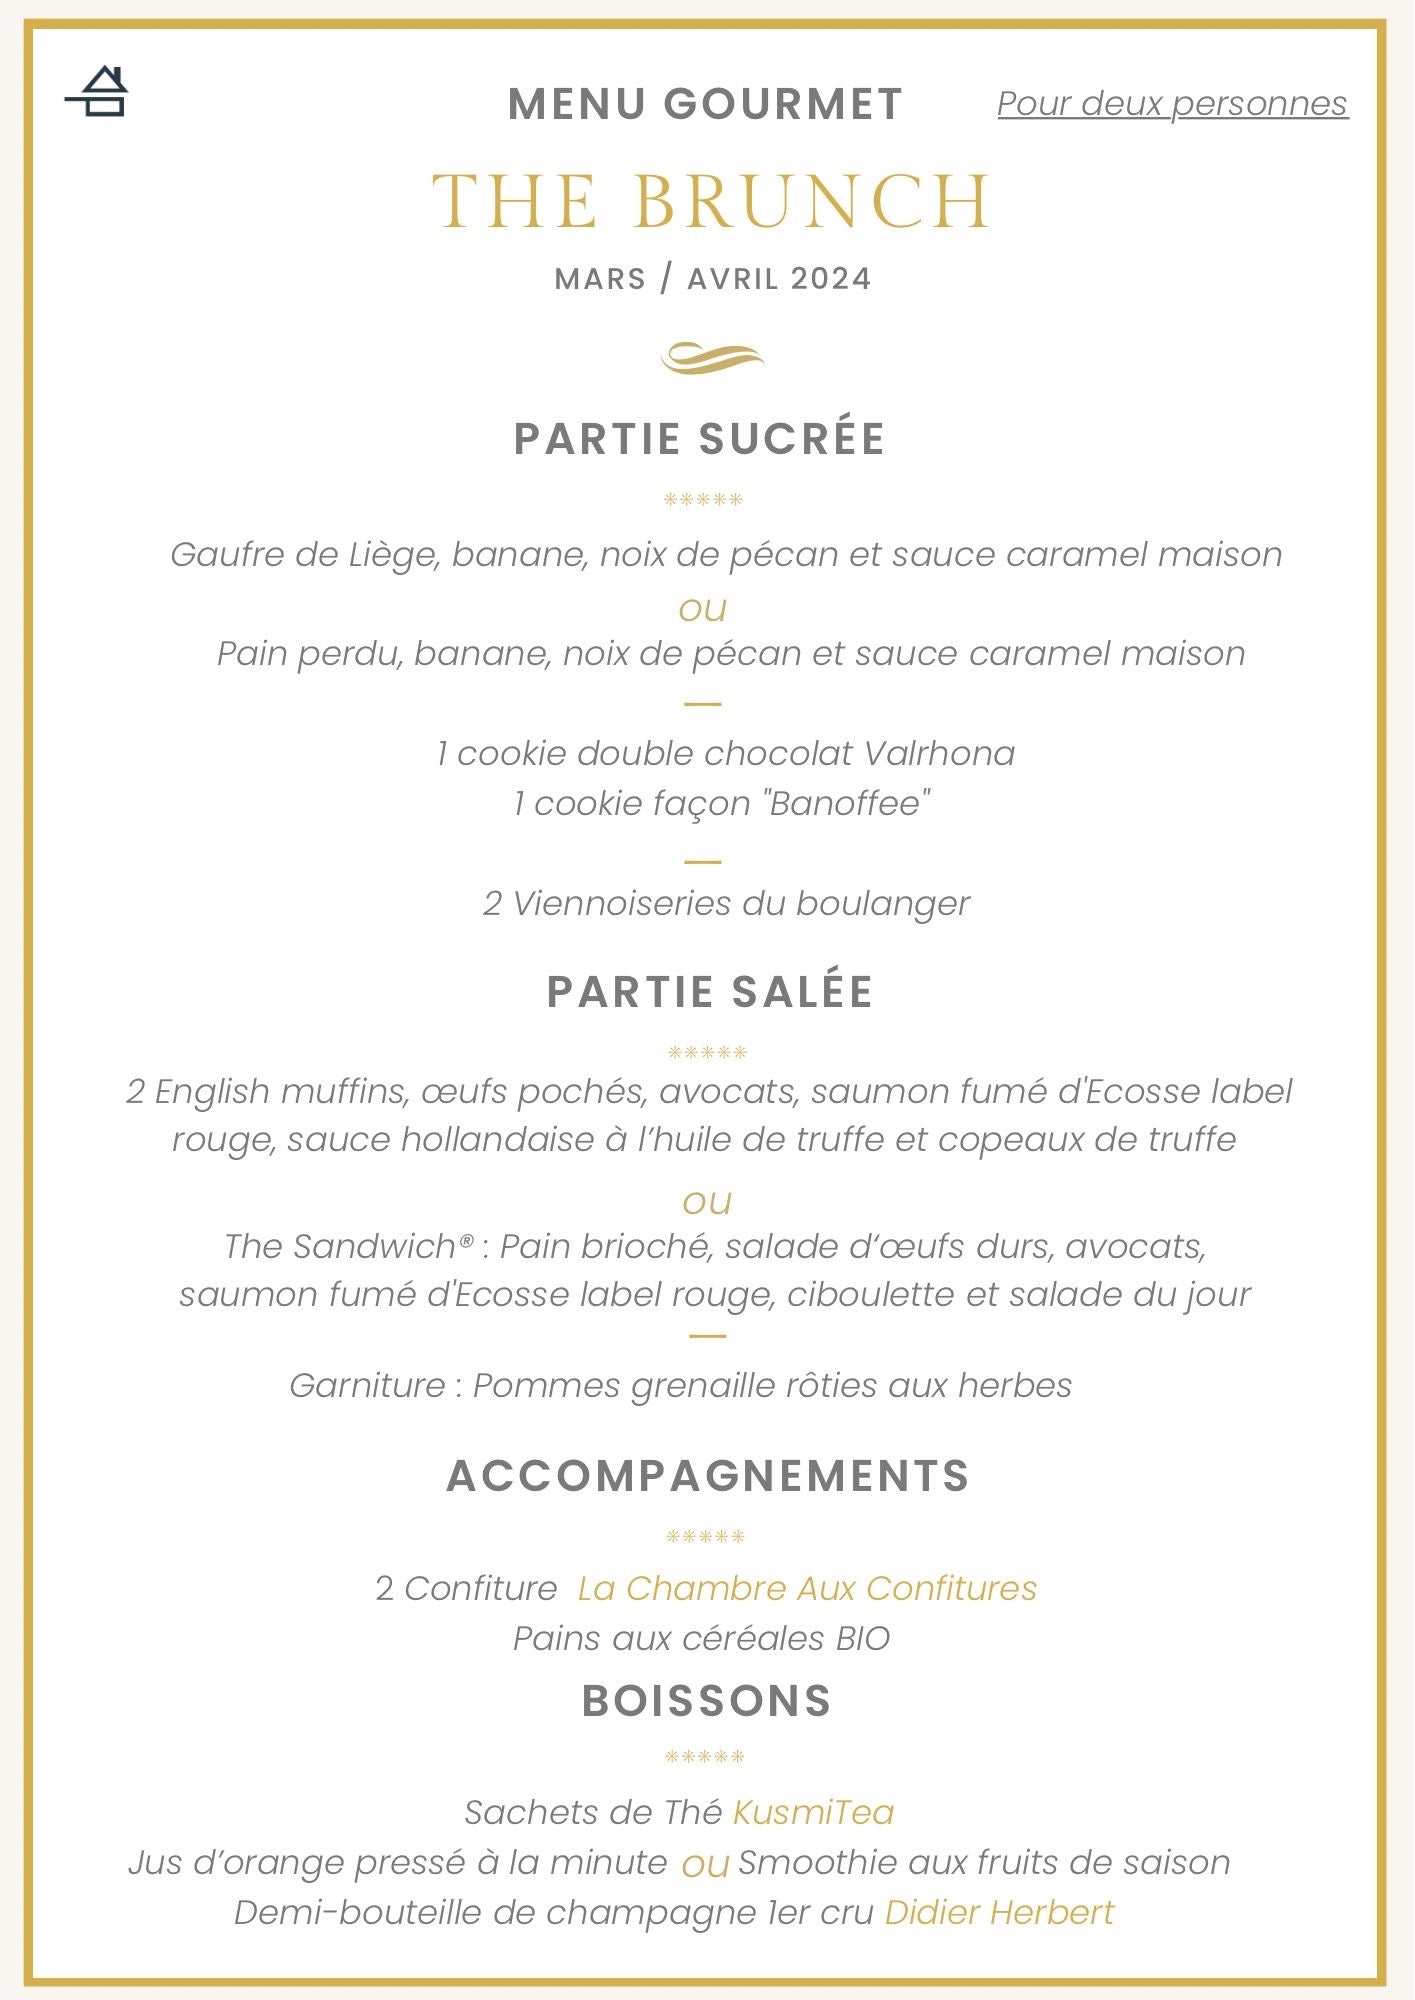 Brunch Gourmet Pour 2 Personnes | The Brunch Paris